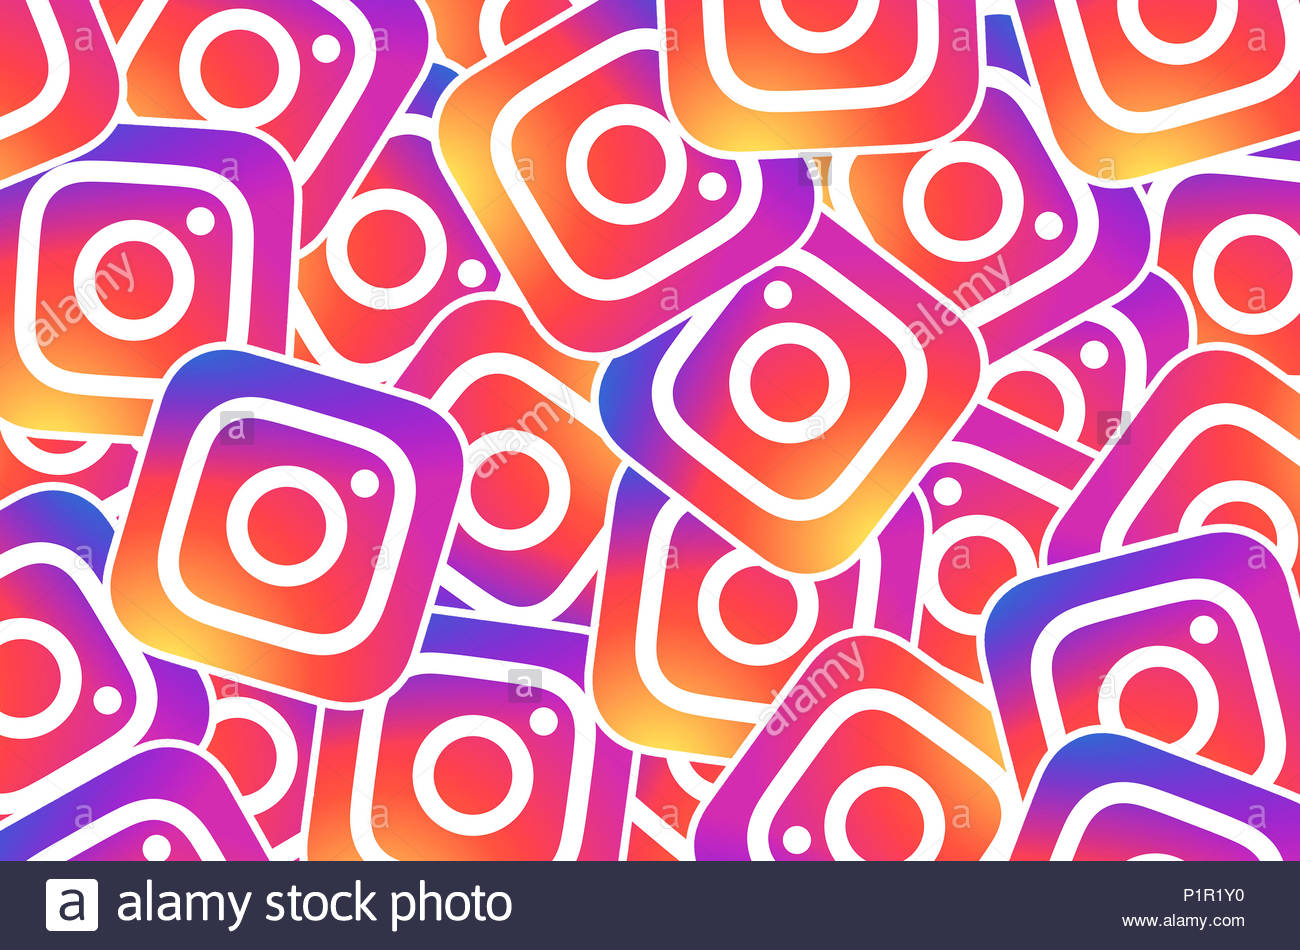 Instagram Logo Stock Photo Alamy